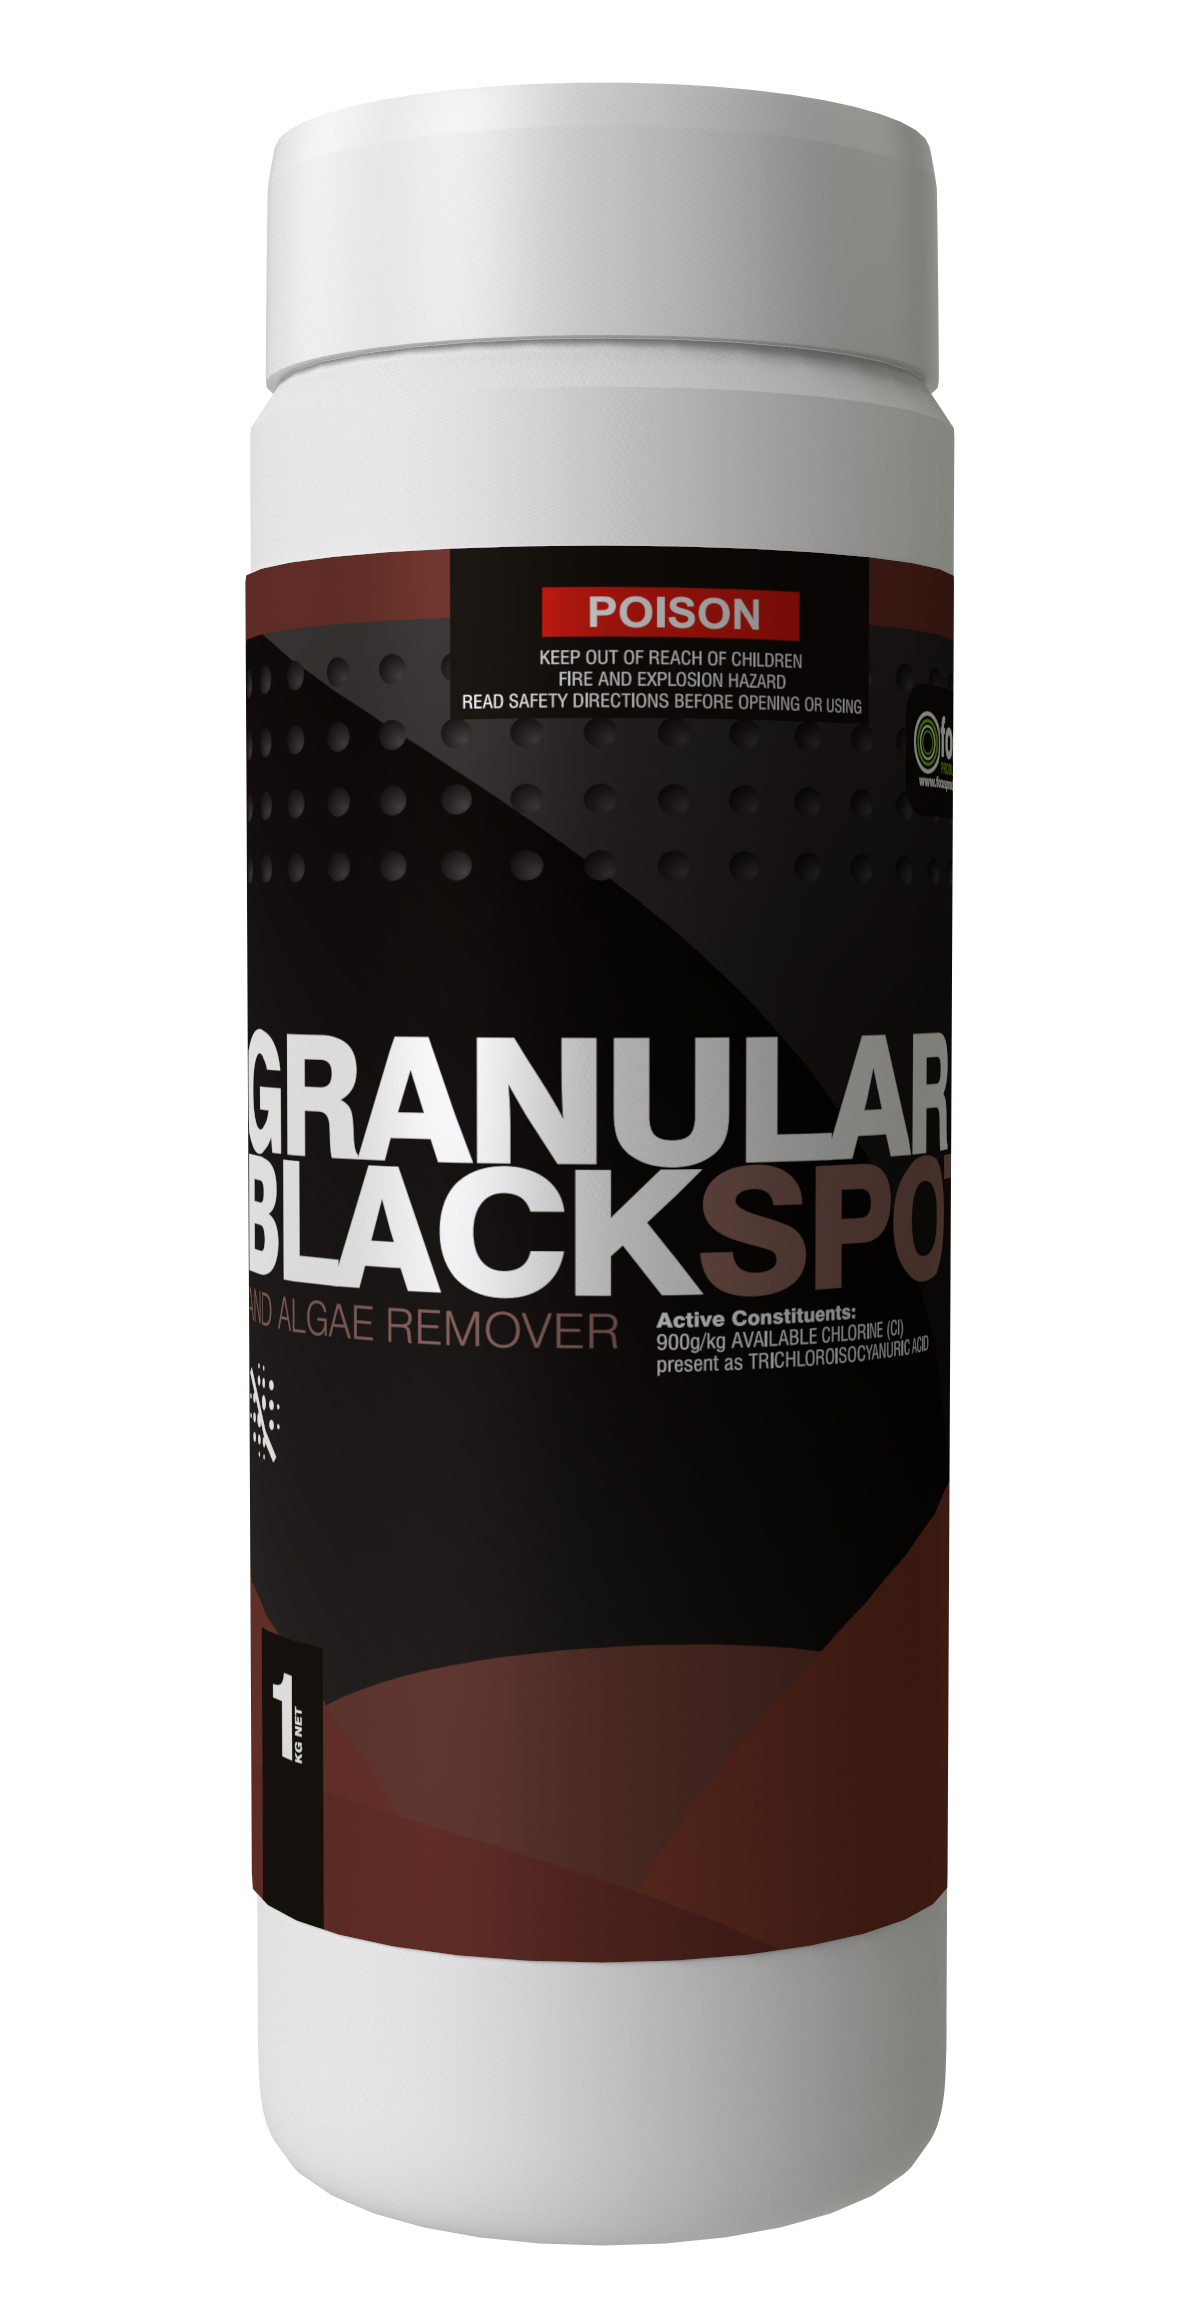 Focus Blackspot Granular Remover 1kg